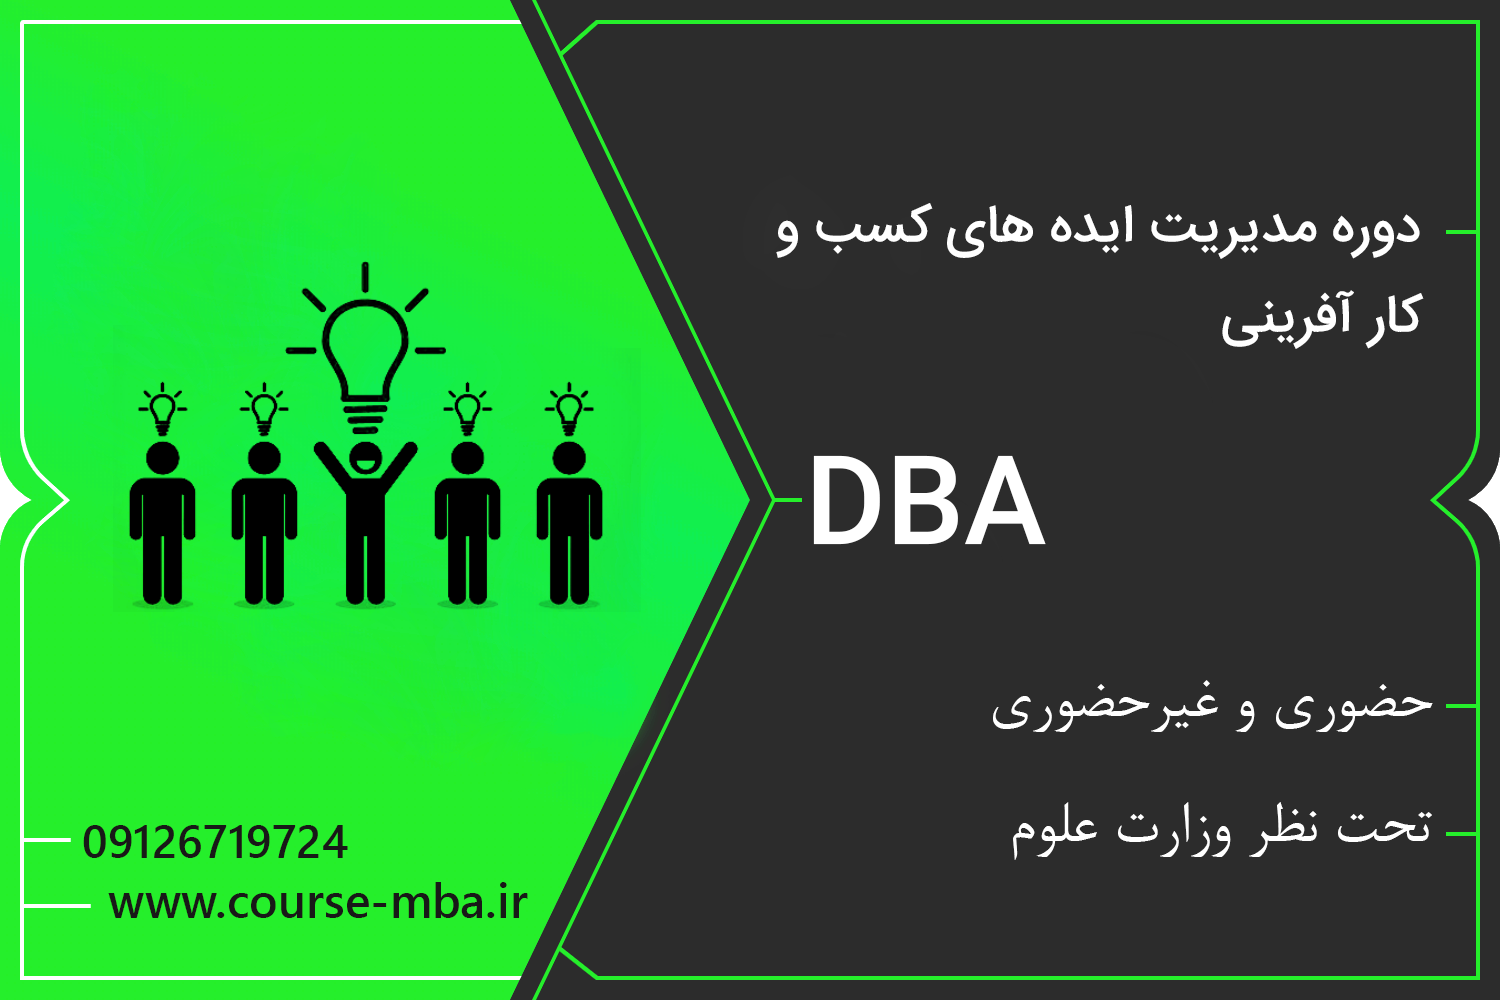 دوره DBA مدیریت کارآفرینی | مدرک DBA مدیریت کارآفرینی